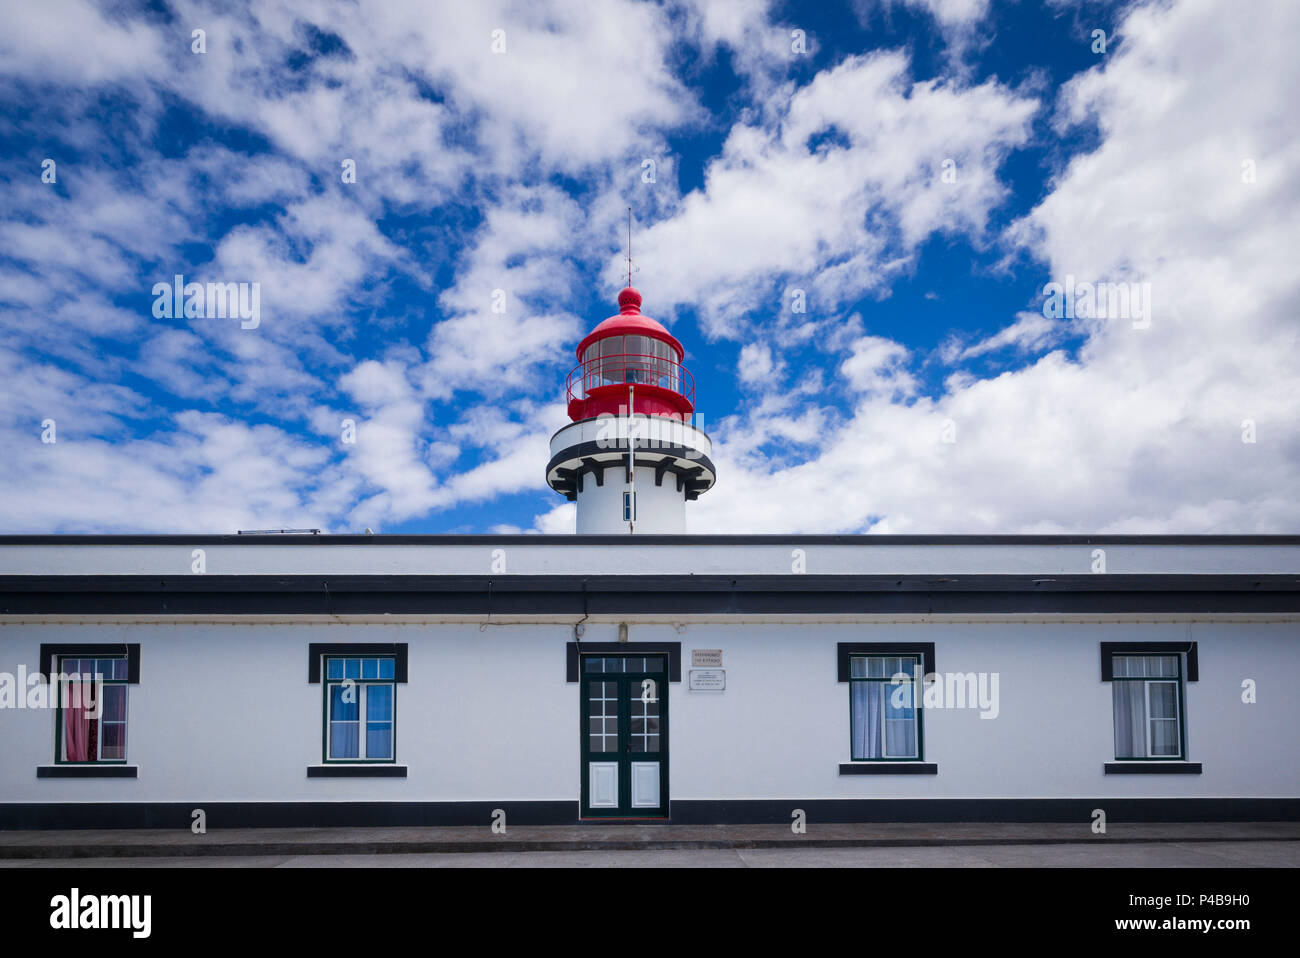 Portugal, Azores, Sao Jorge Island, Topo, Ponta do Topo Lighthouse Stock Photo